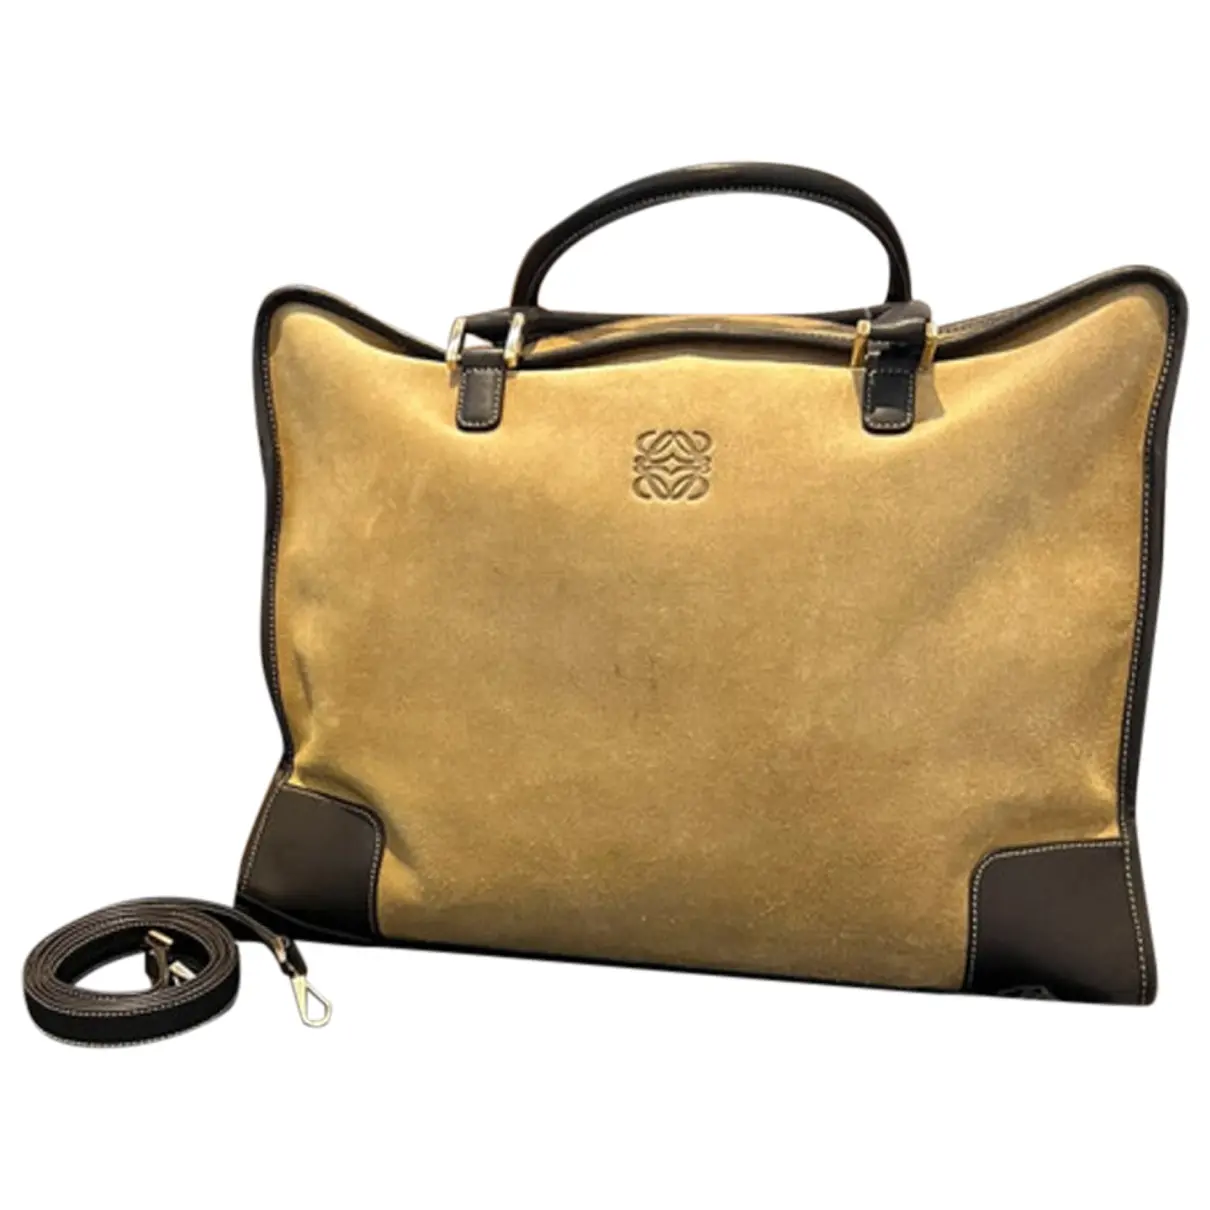 Amazona leather handbag